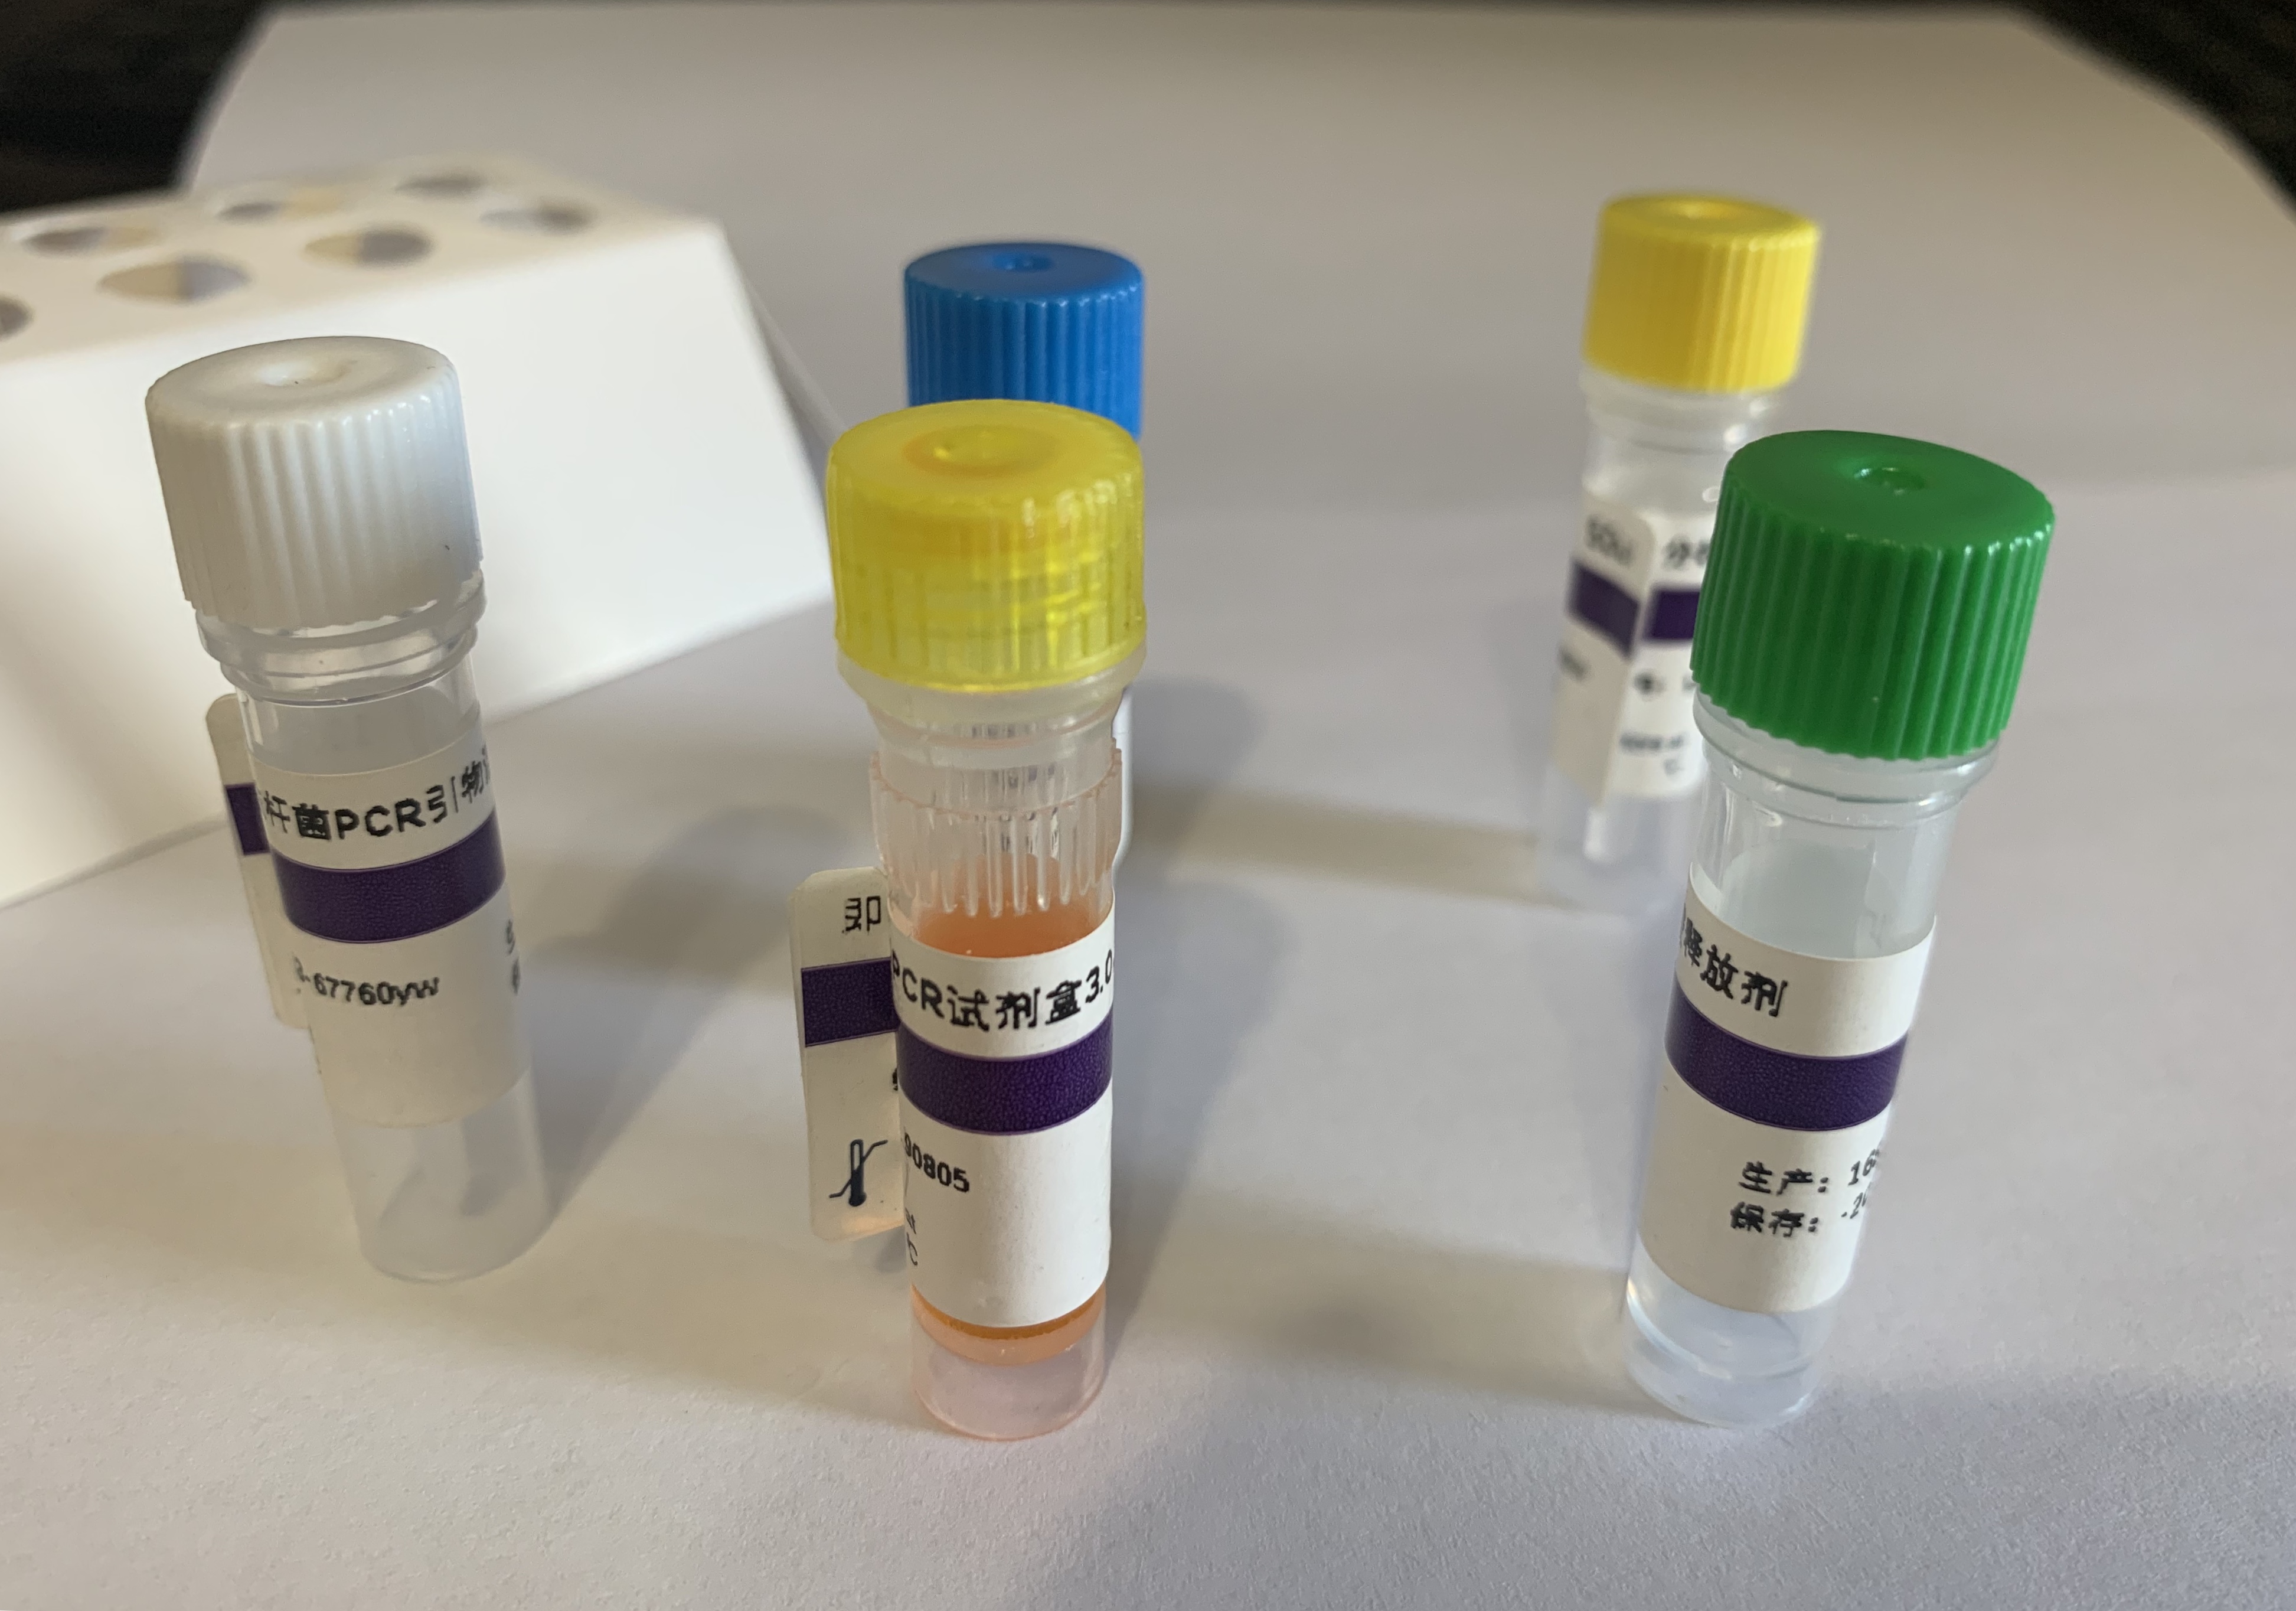 绵羊鞭虫染料法荧光定量PCR试剂盒